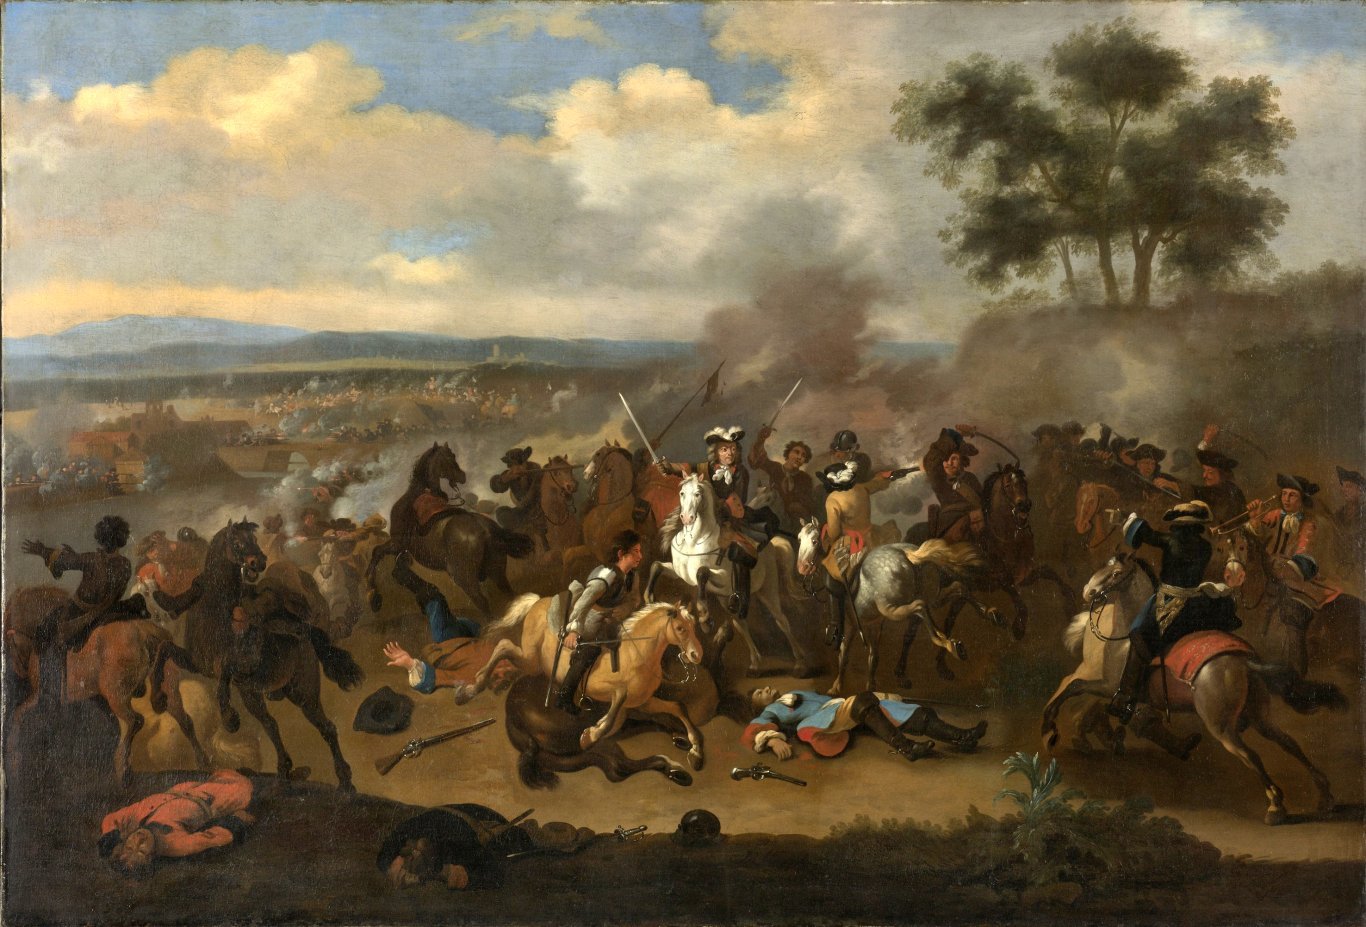 Battle of the Boyne (Ireland) between James II and William III, 12 July 1690